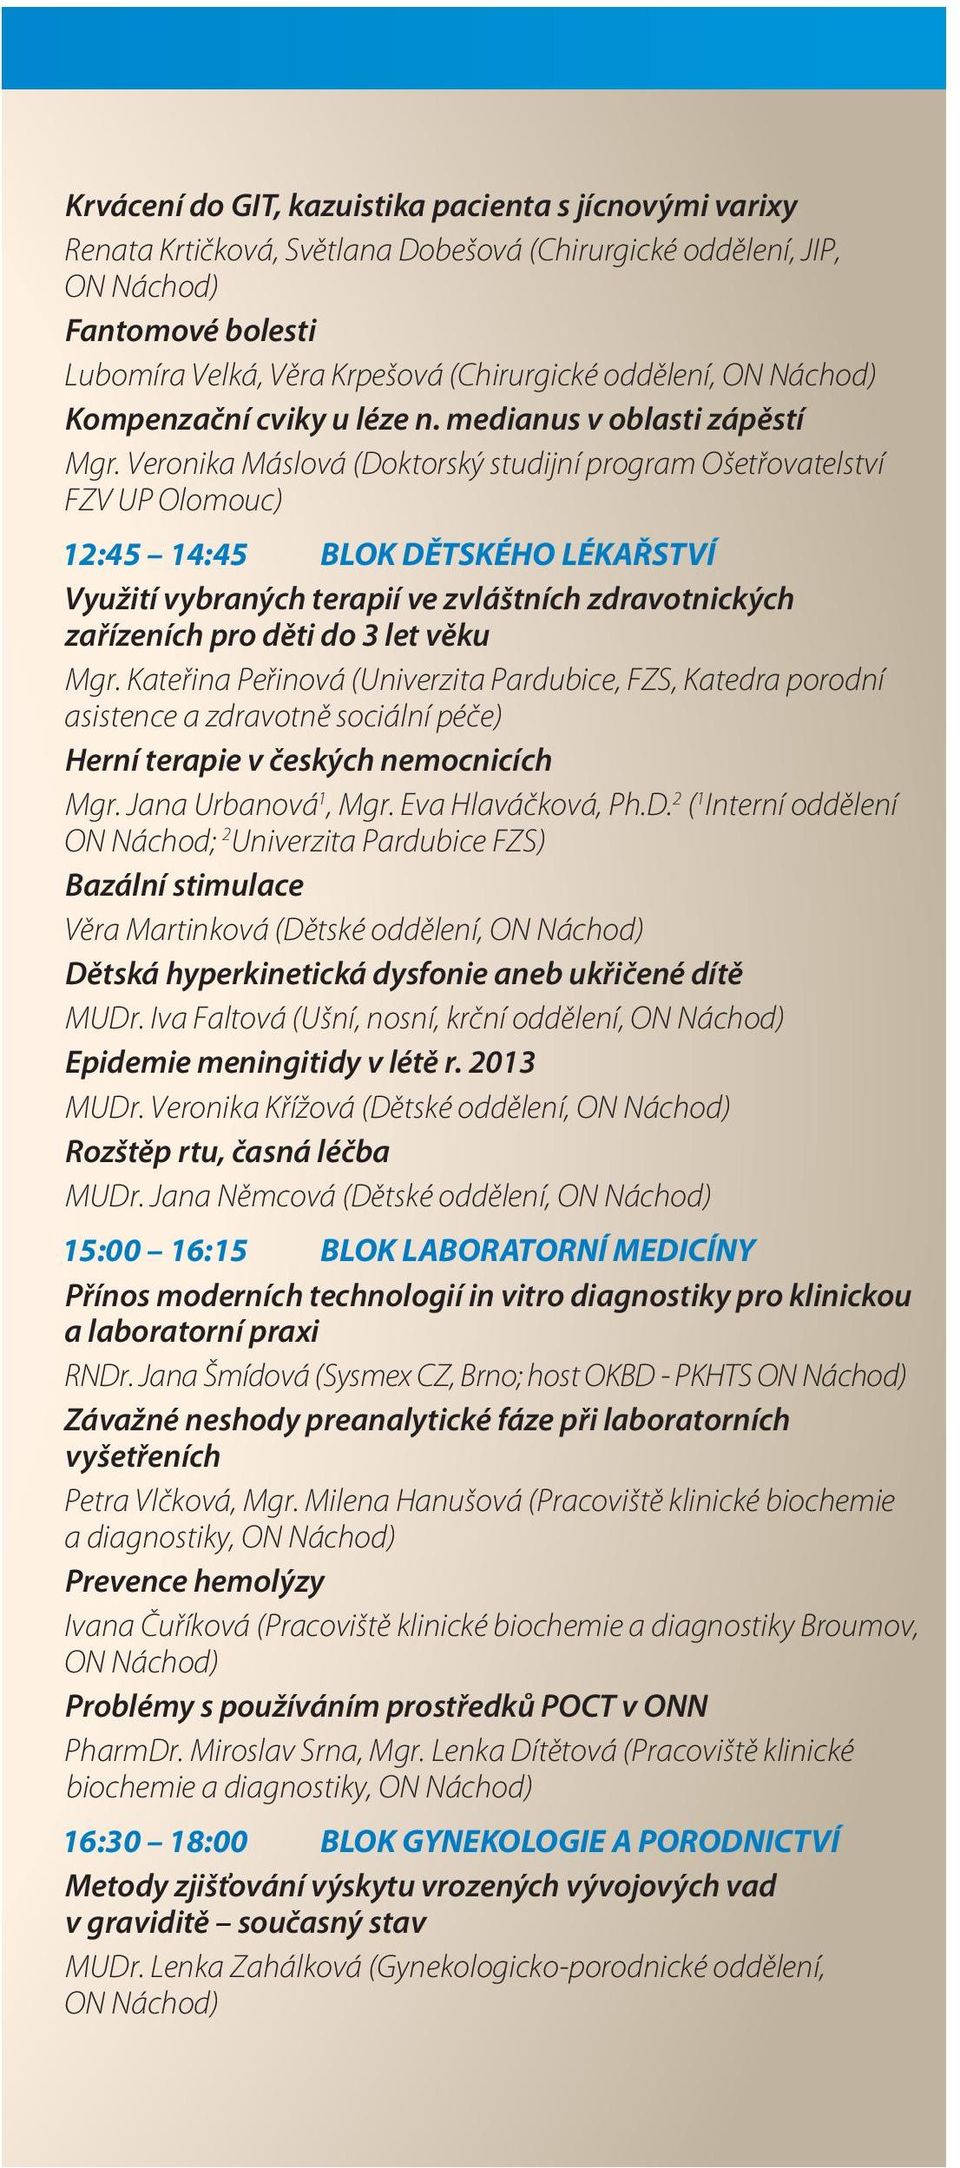 Veronika Máslová (Doktorský studijní program Ošetřovatelství FZV UP Olomouc) 12:45 14:45 BLOK DĚTSKÉHO LÉKAŘSTVÍ Využití vybraných terapií ve zvláštních zdravotnických zařízeních pro děti do 3 let